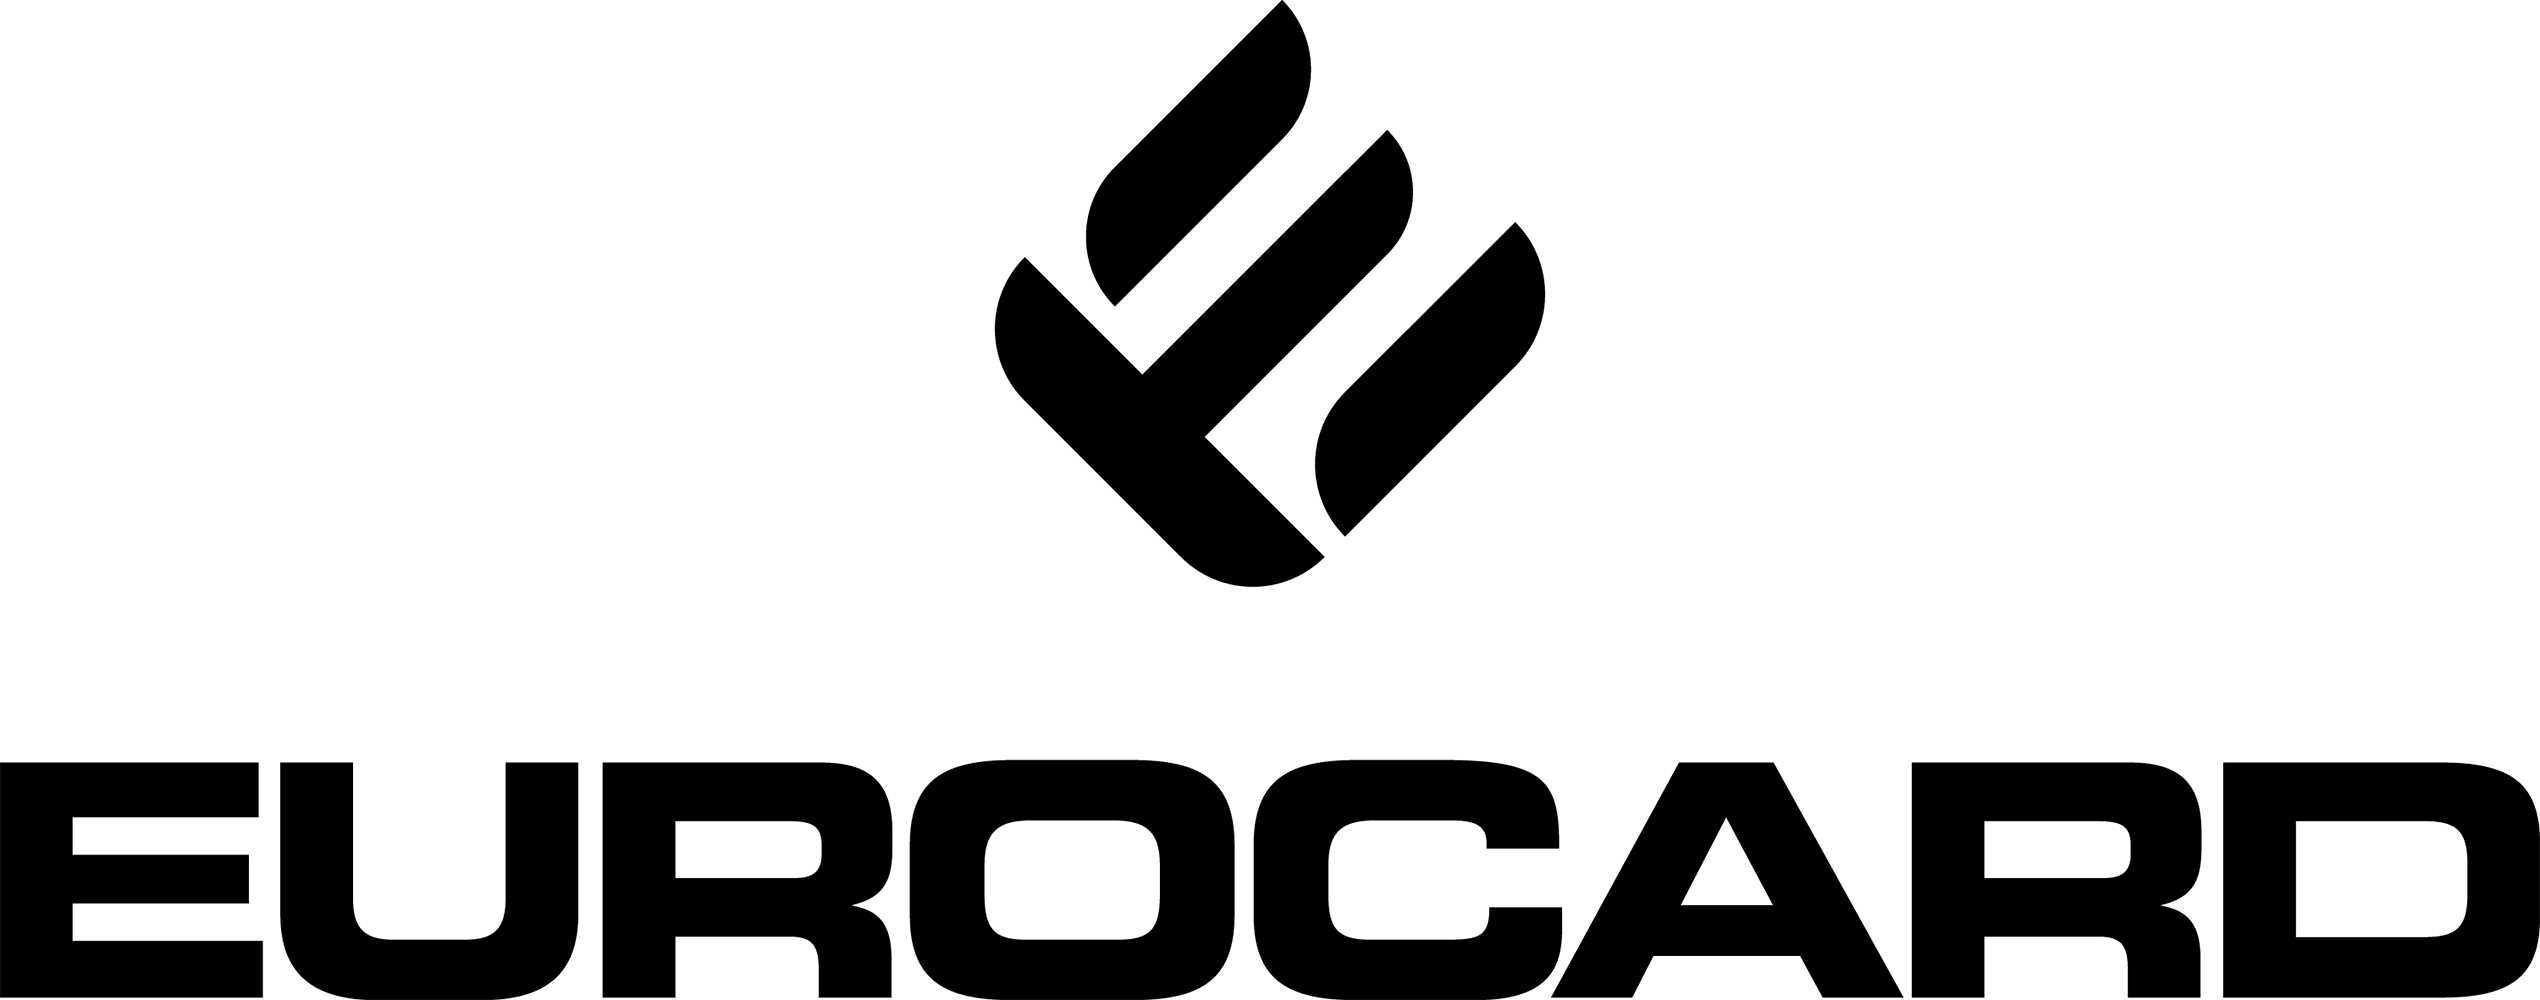 Logotype CMYK vektor